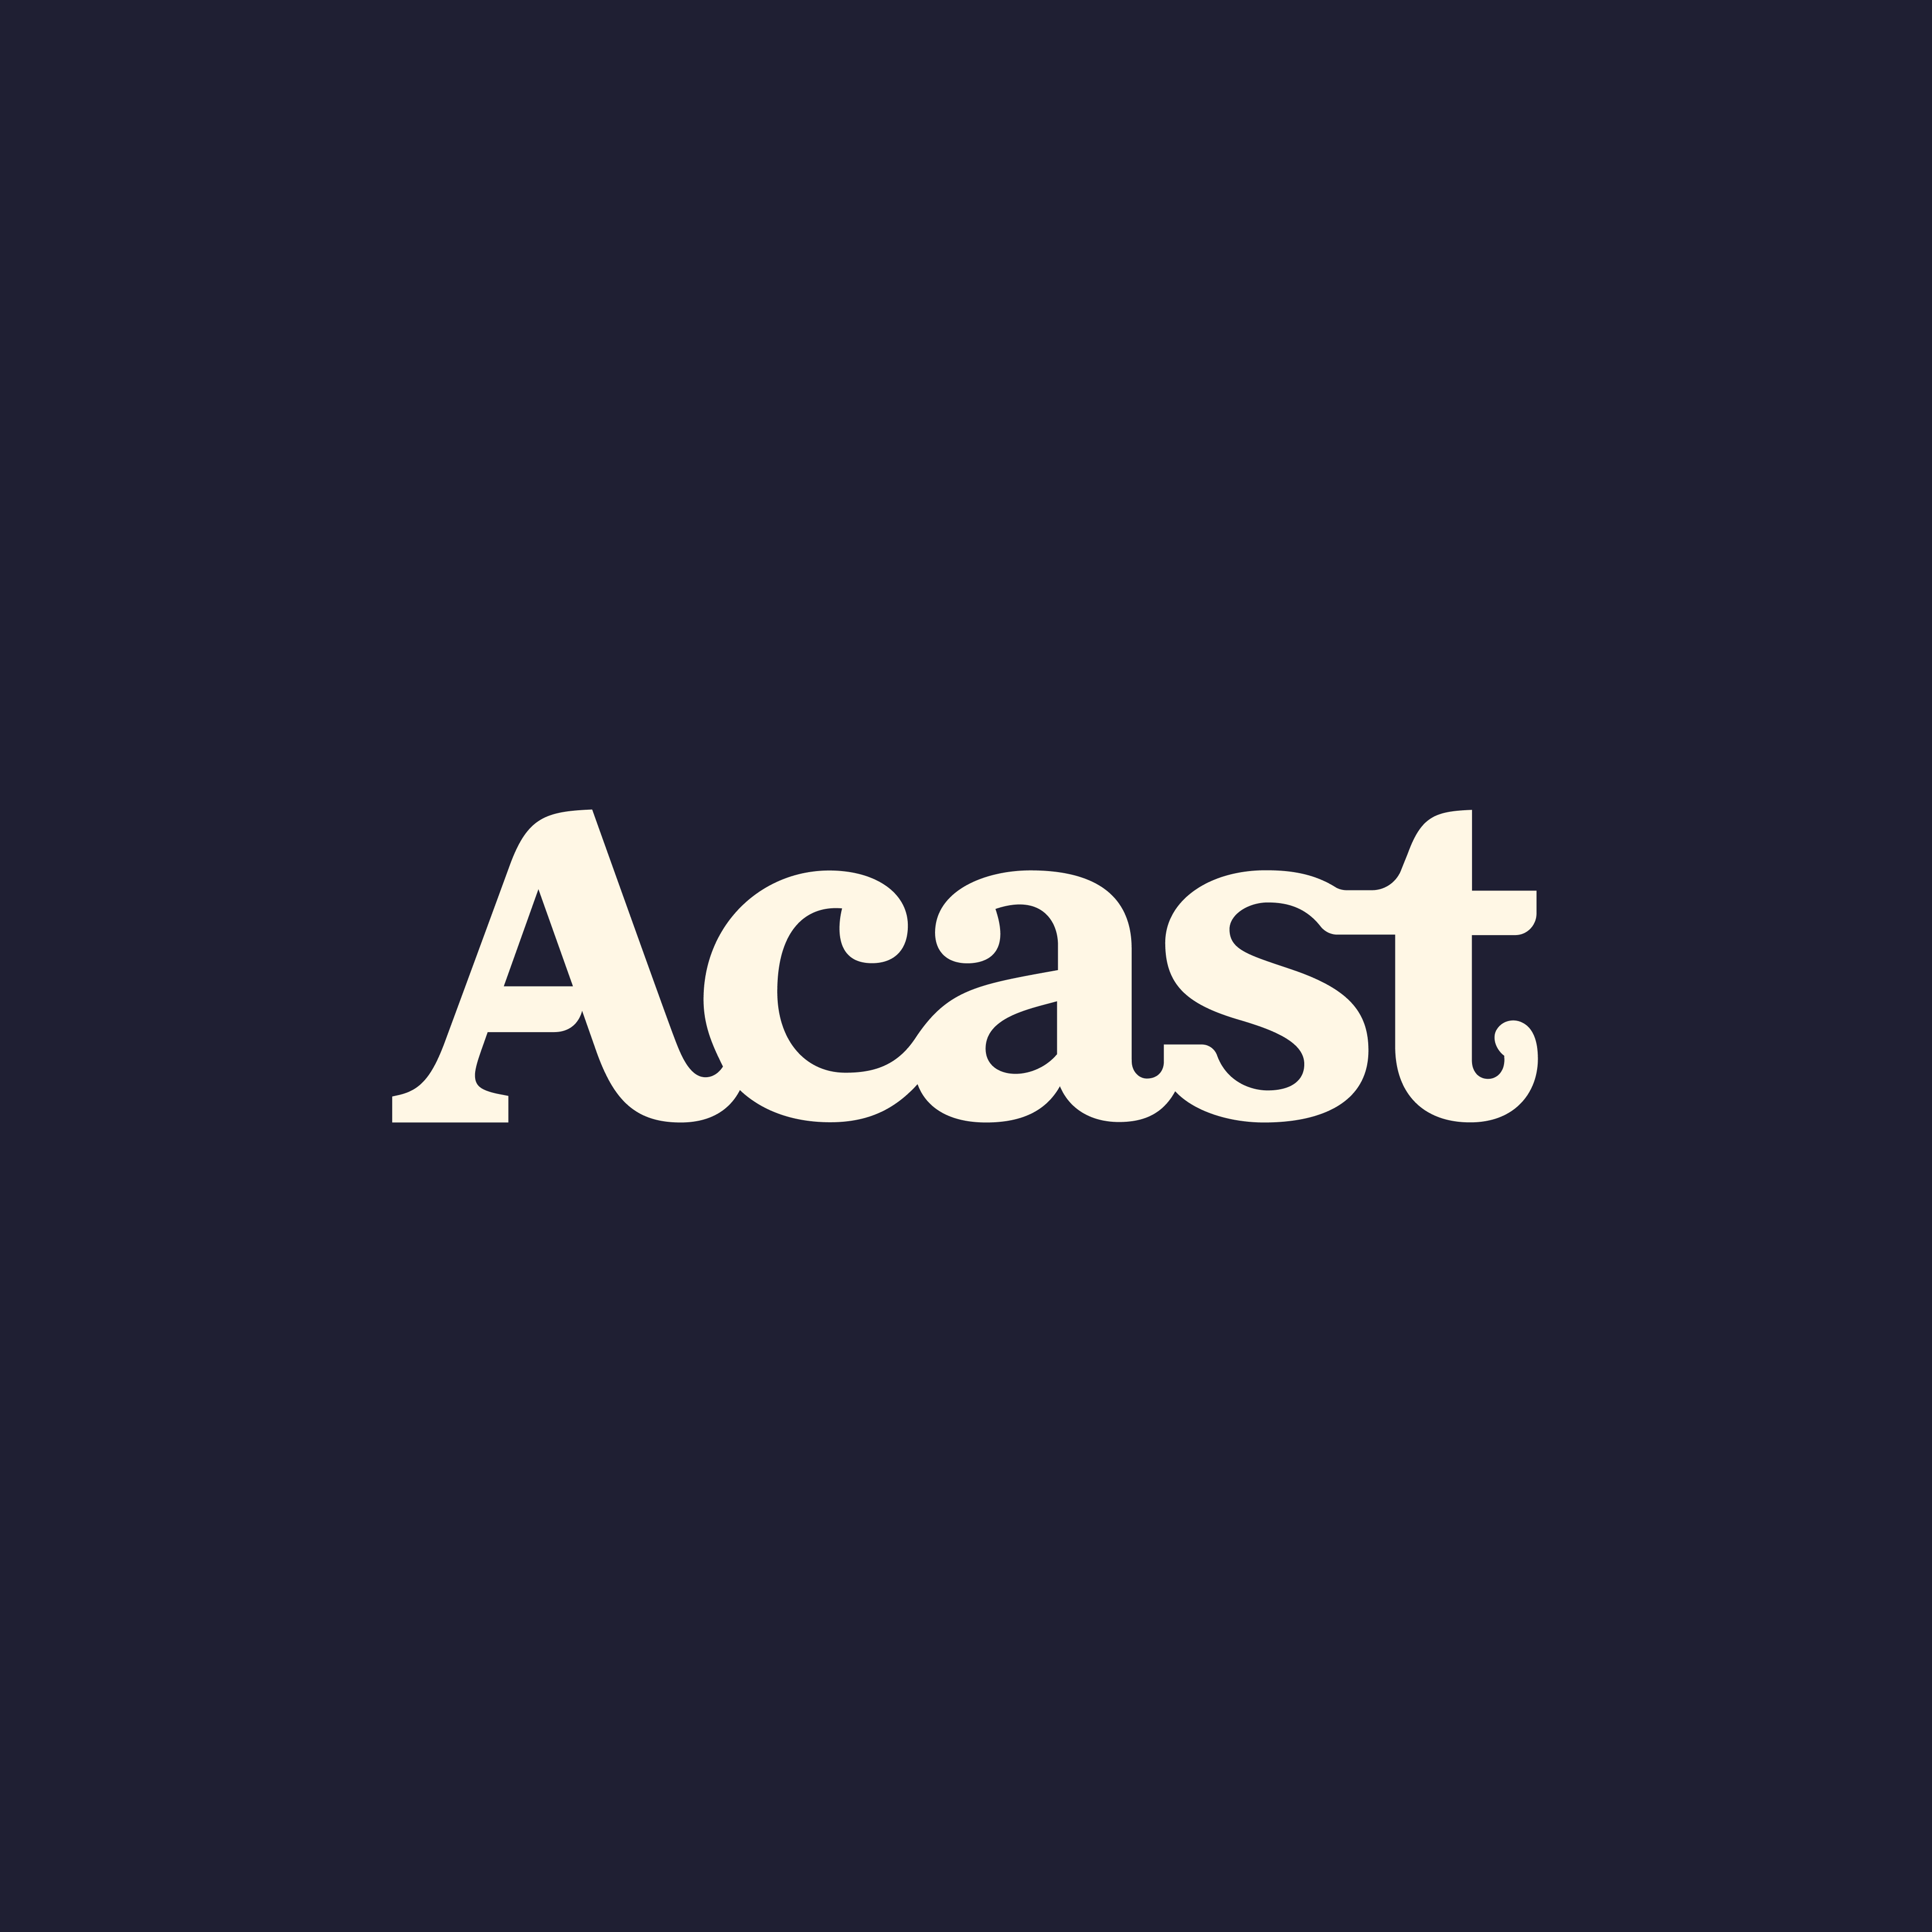 (c) Acast.com